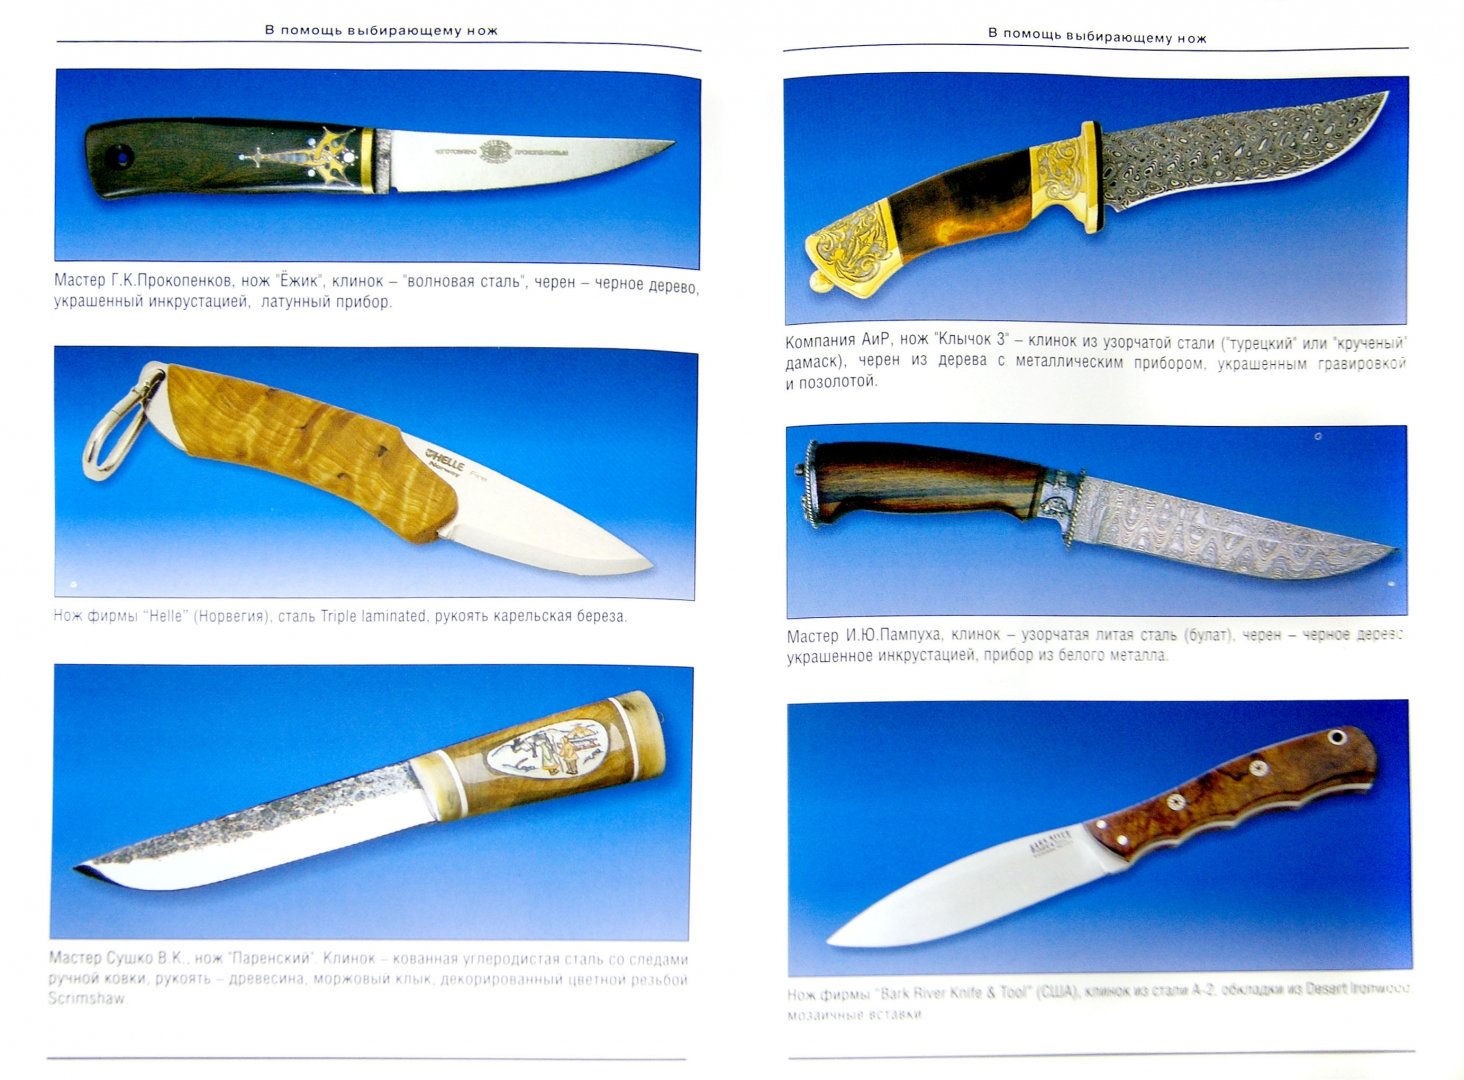 Иллюстрация 1 из 6 для В помощь выбирающему нож - Александр Марьянко | Лабиринт - книги. Источник: Лабиринт